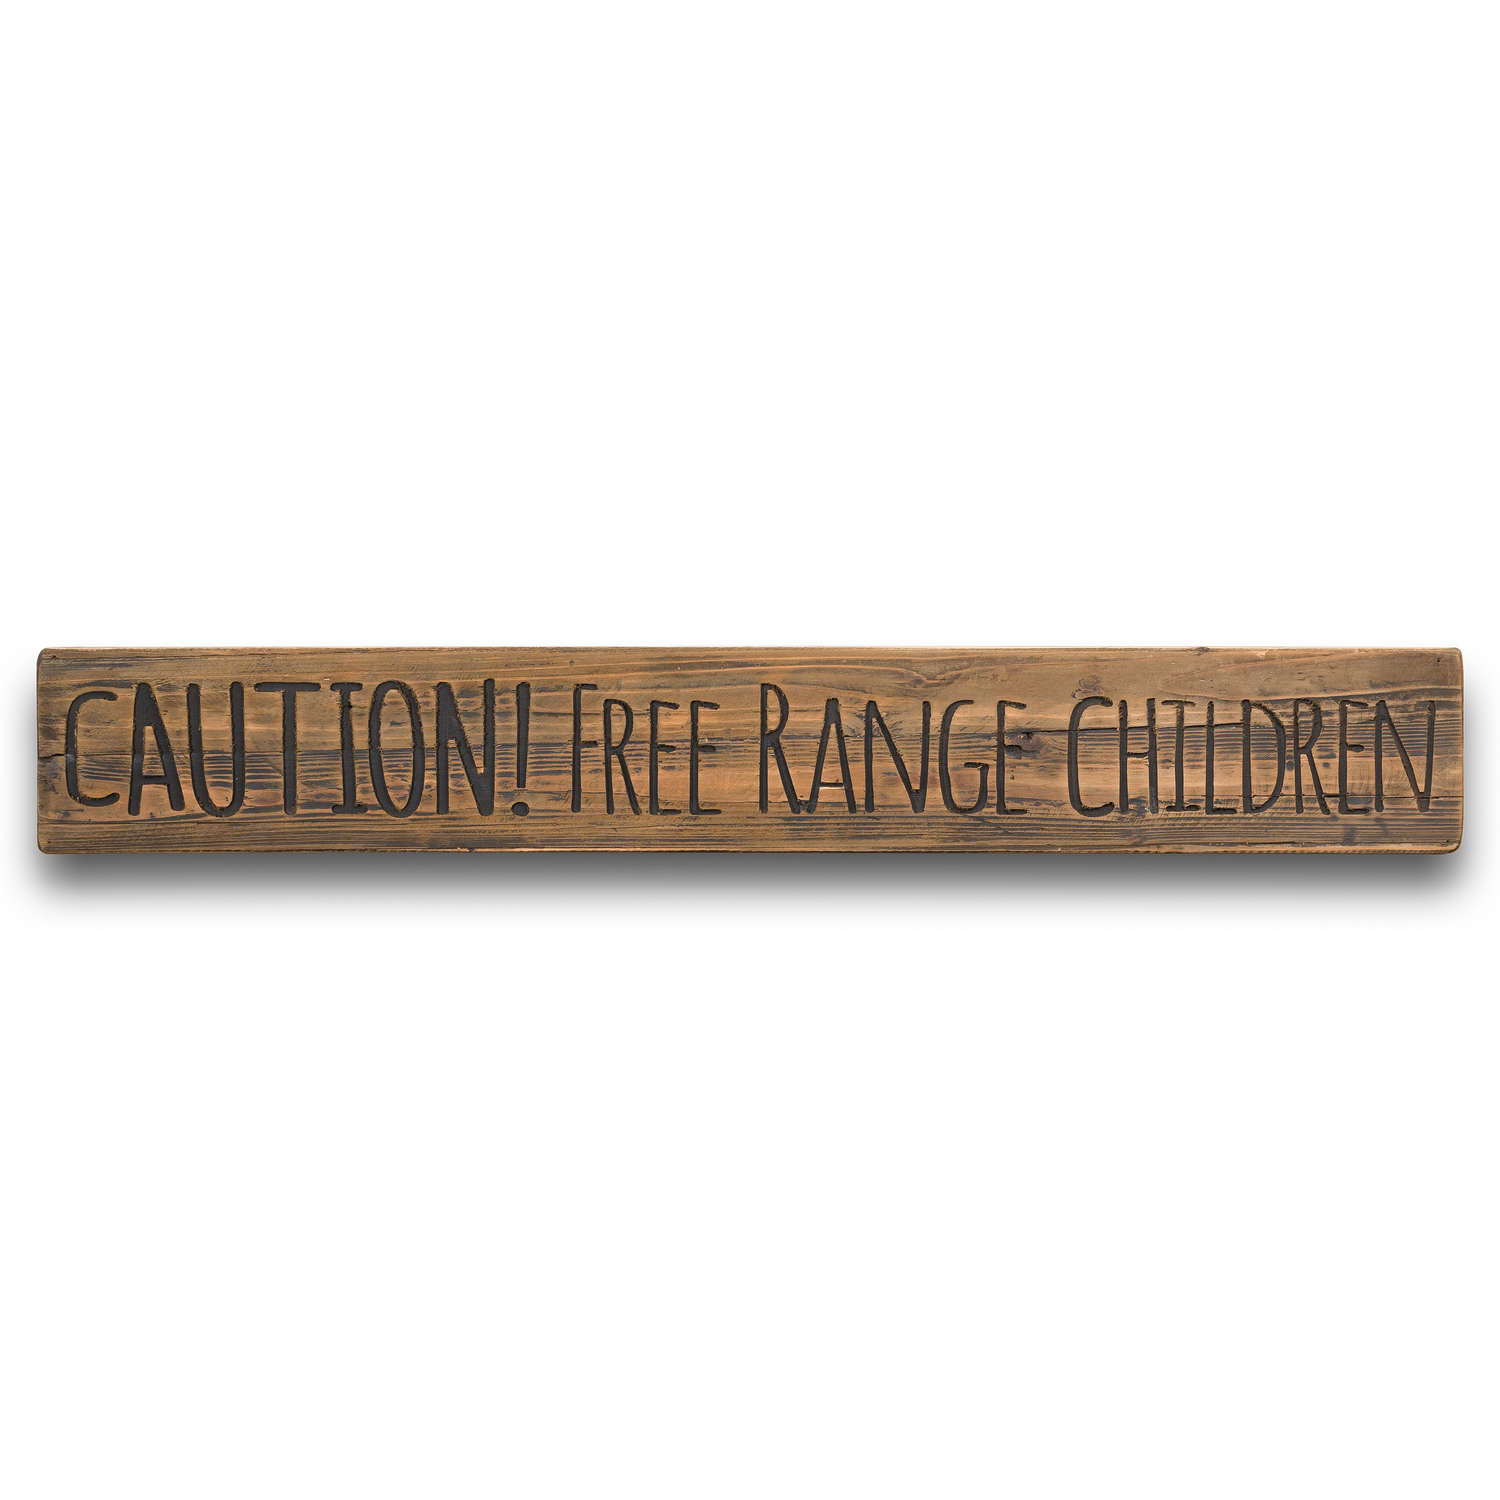 Free Range Children Rustic Wooden Message Plaque